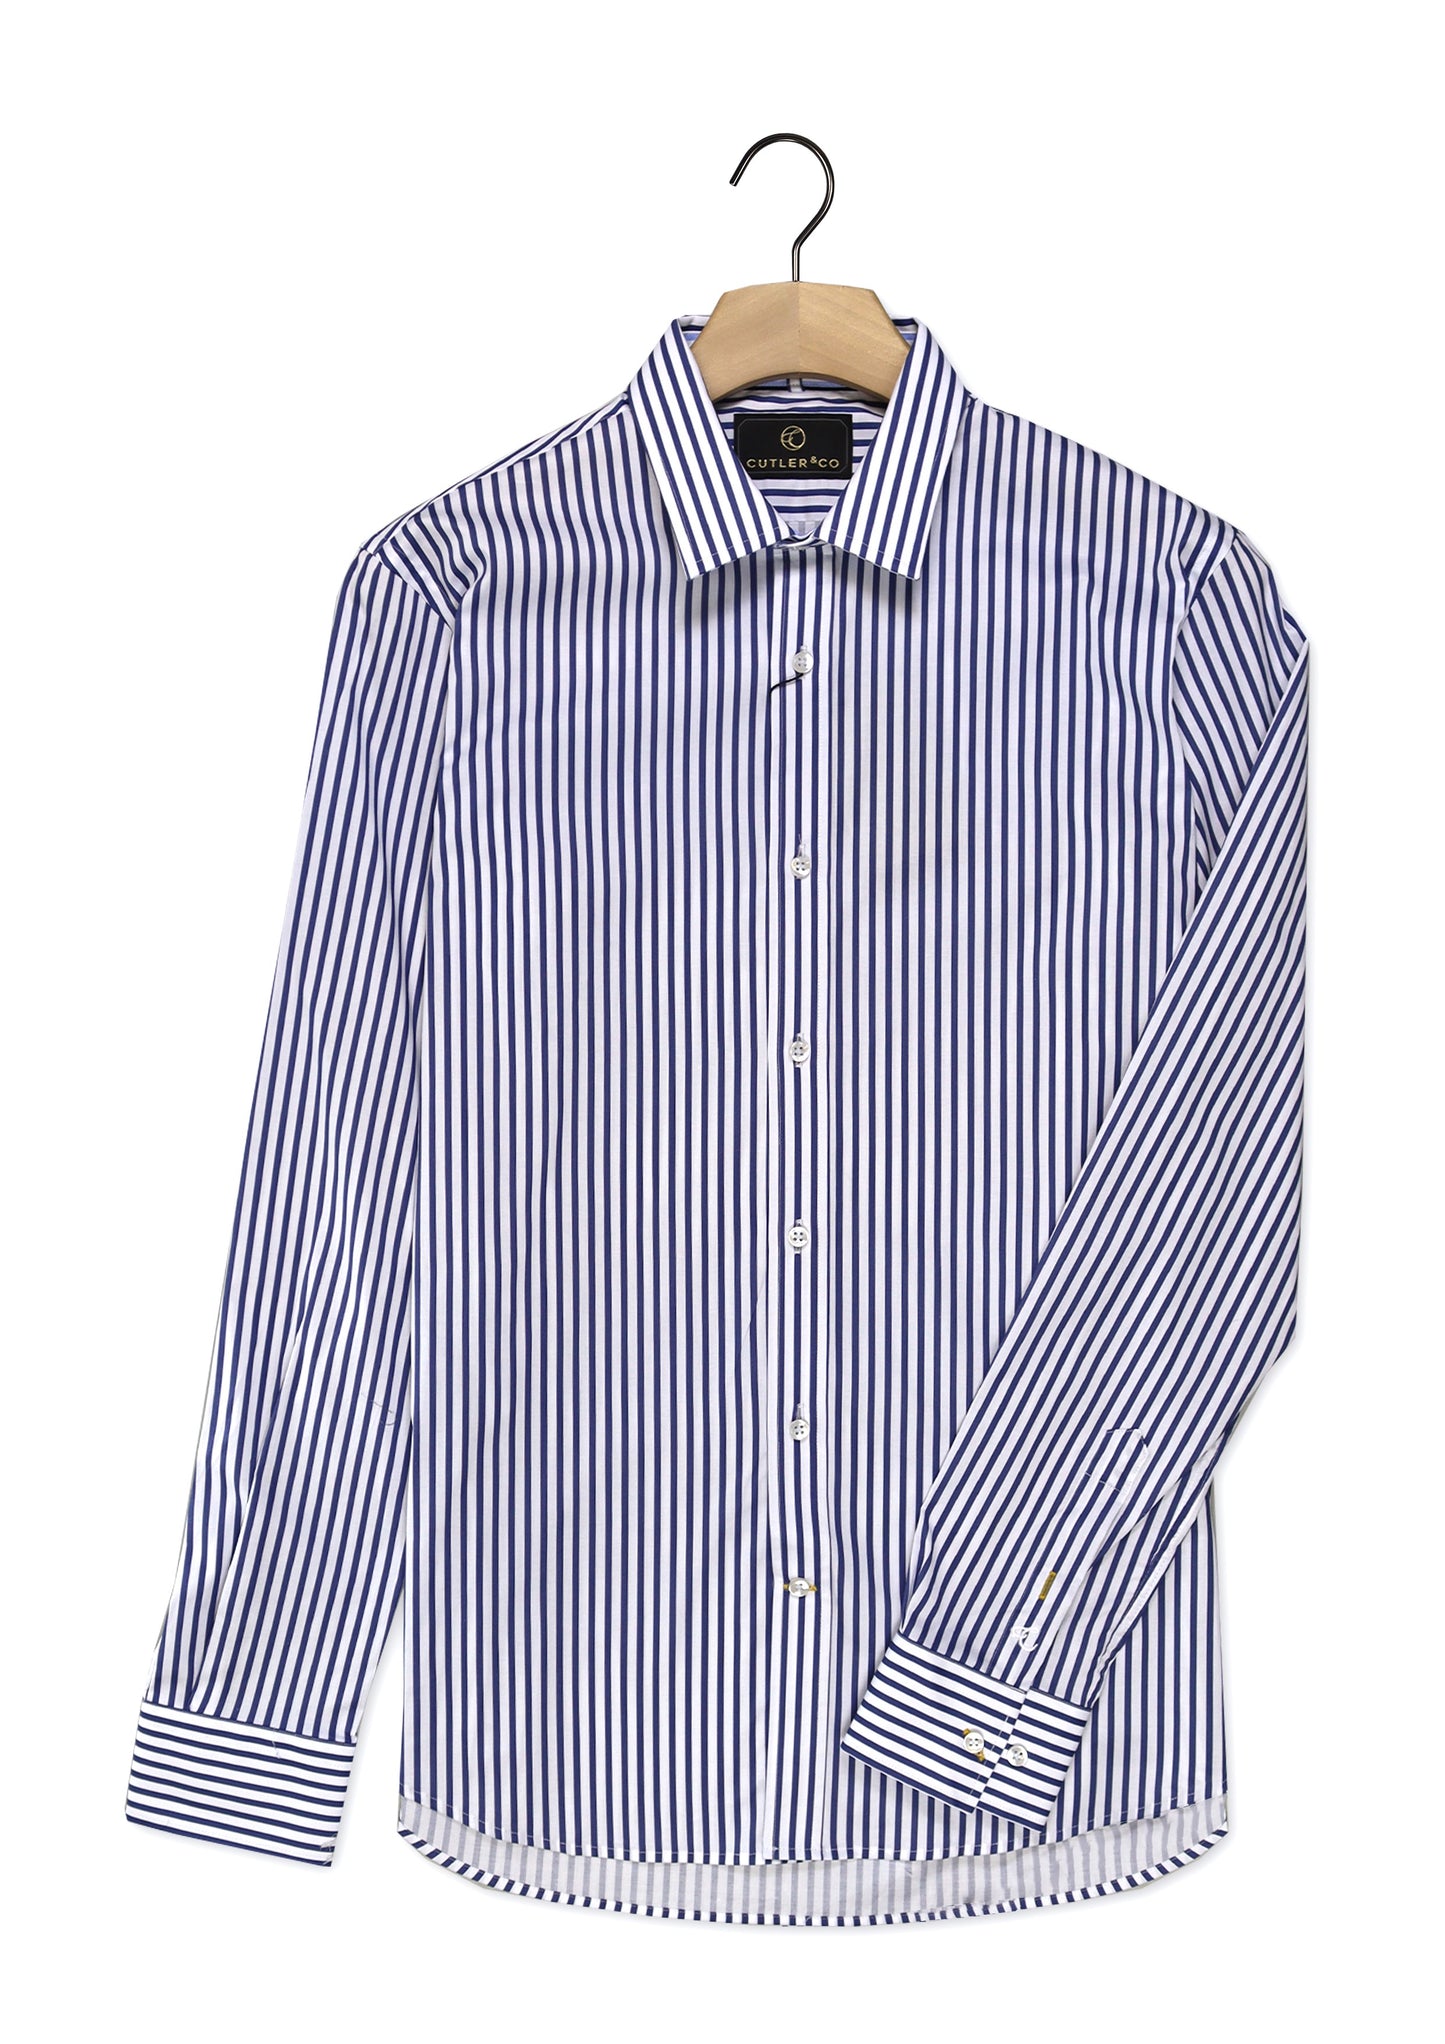 Cutler & Co -Blake Striped Shirt - Three Colours